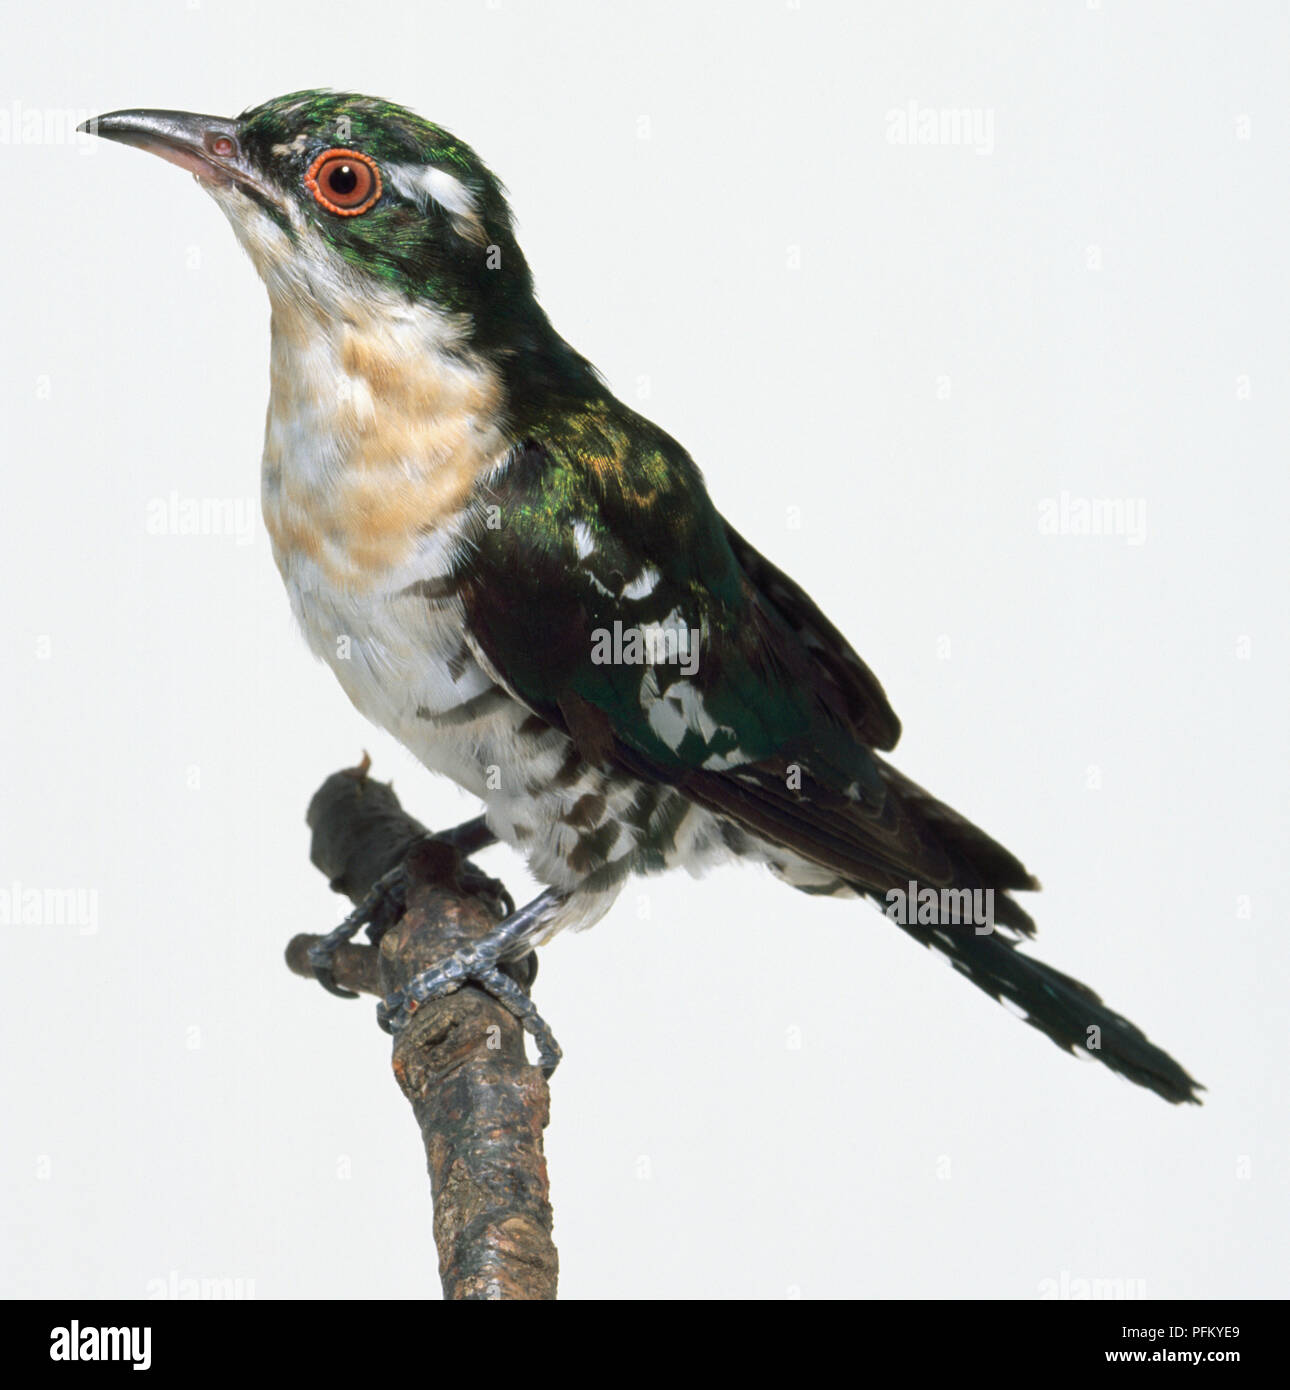 Piume bianche realistiche. Piumaggio di uccelli,: immagine vettoriale stock  (royalty free) 1438247114